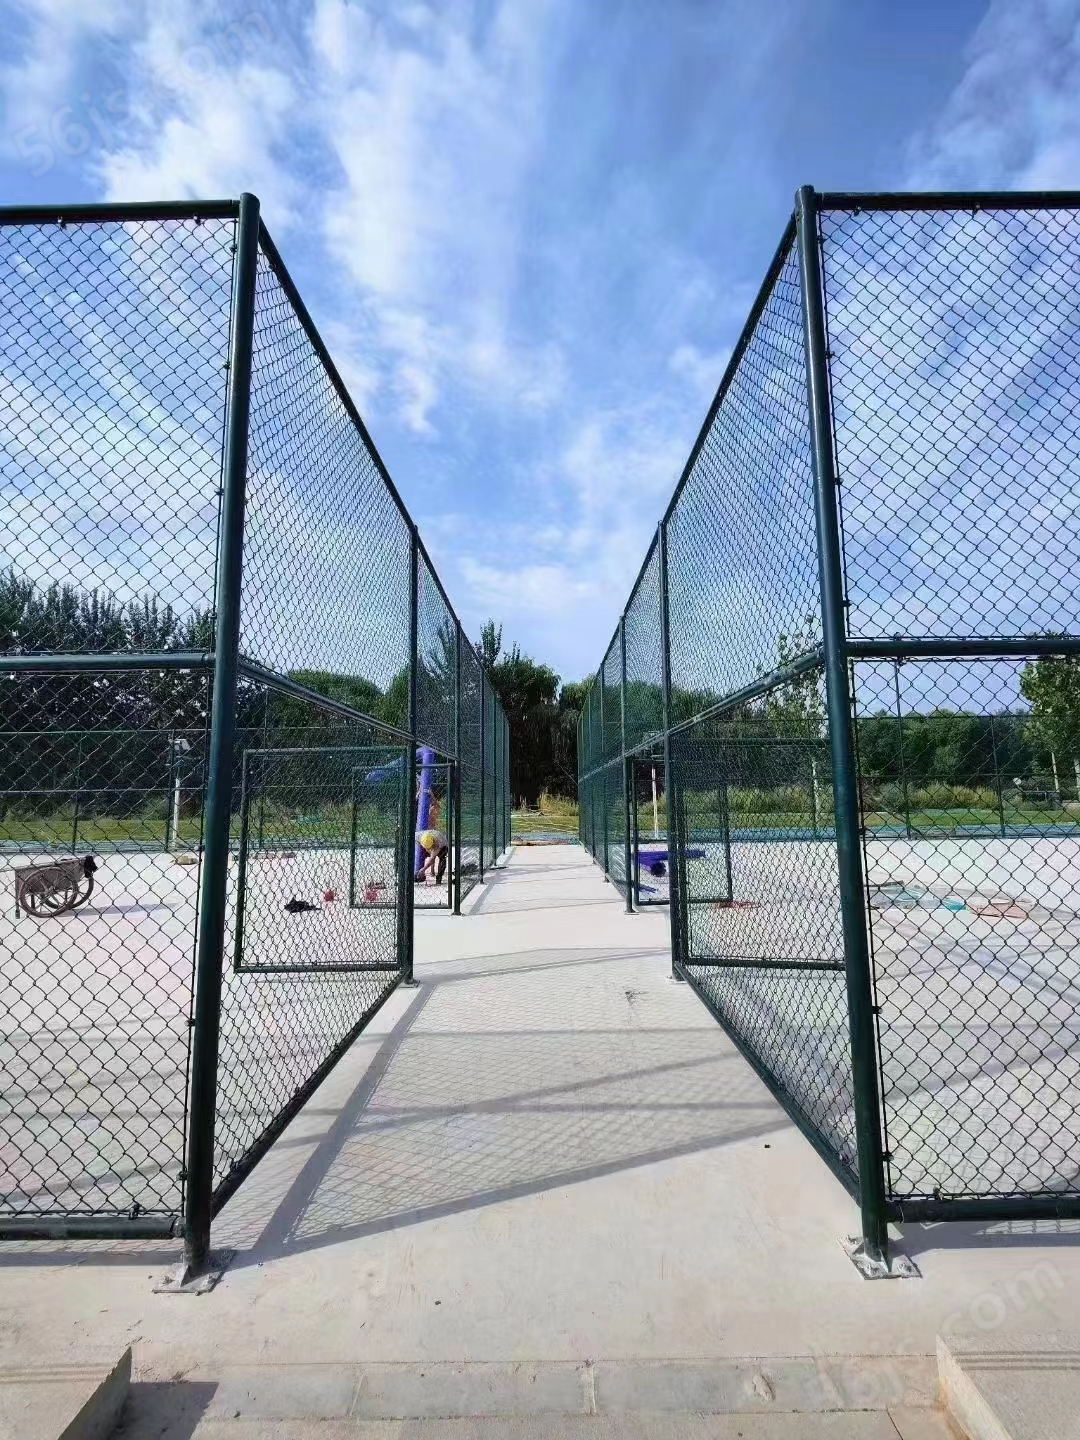 网球运动场围网定制